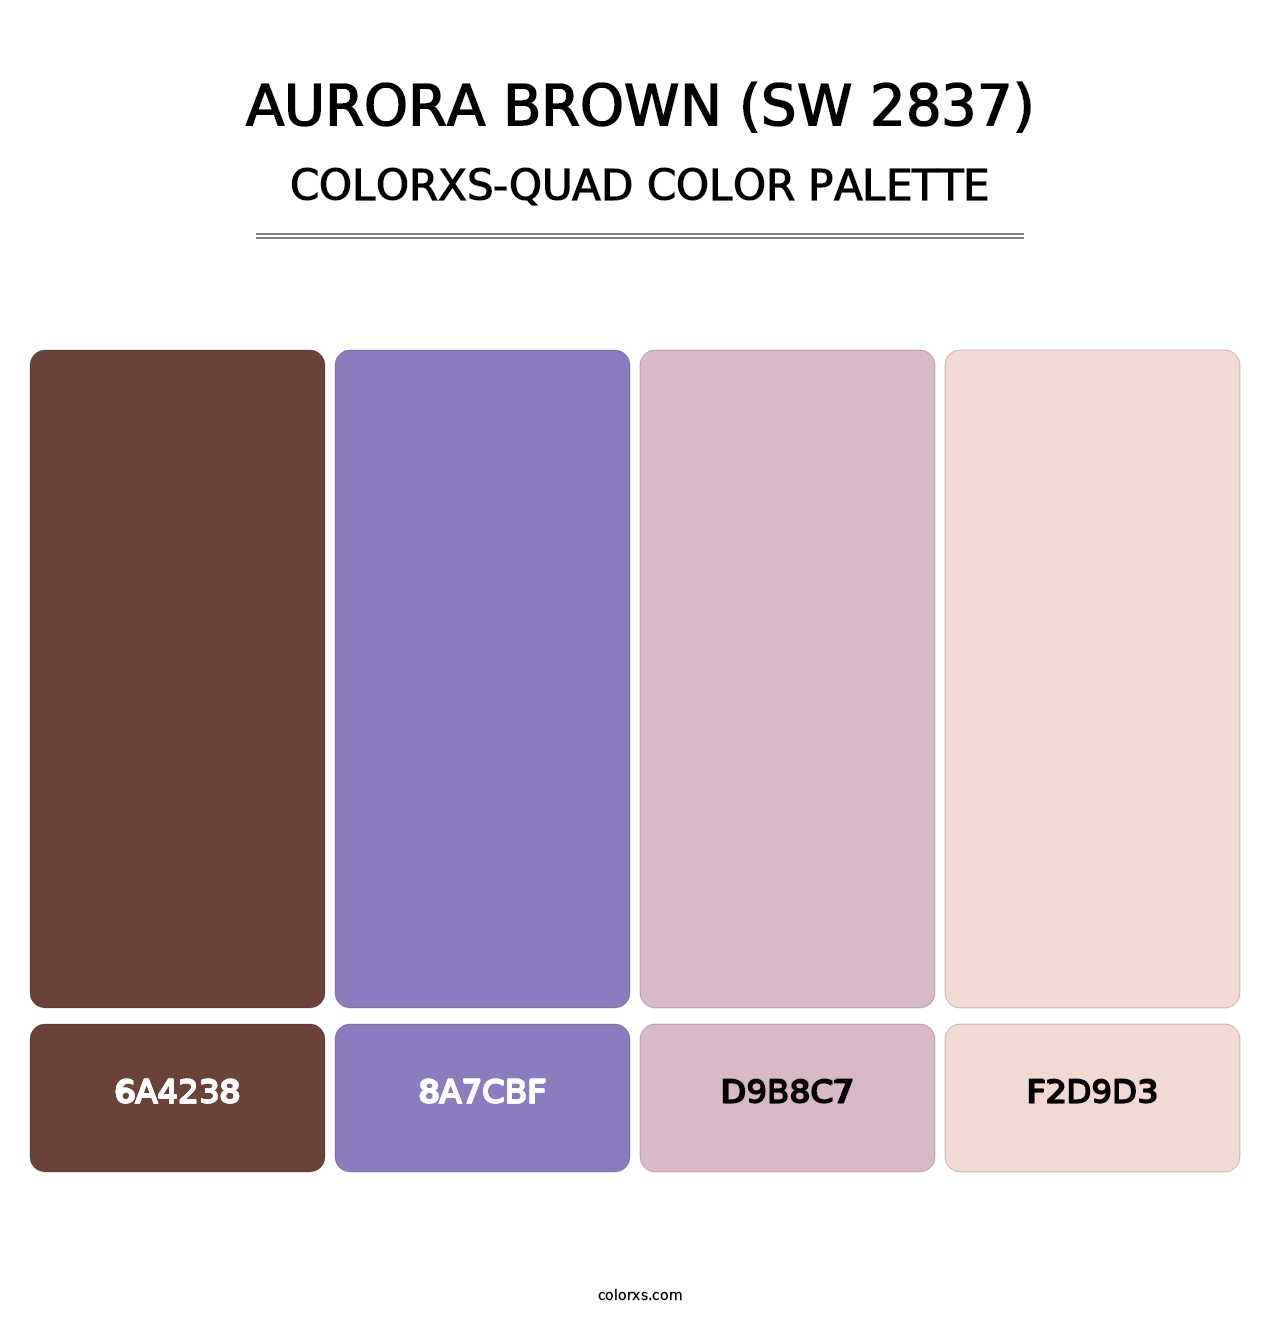 Aurora Brown (SW 2837) - Colorxs Quad Palette